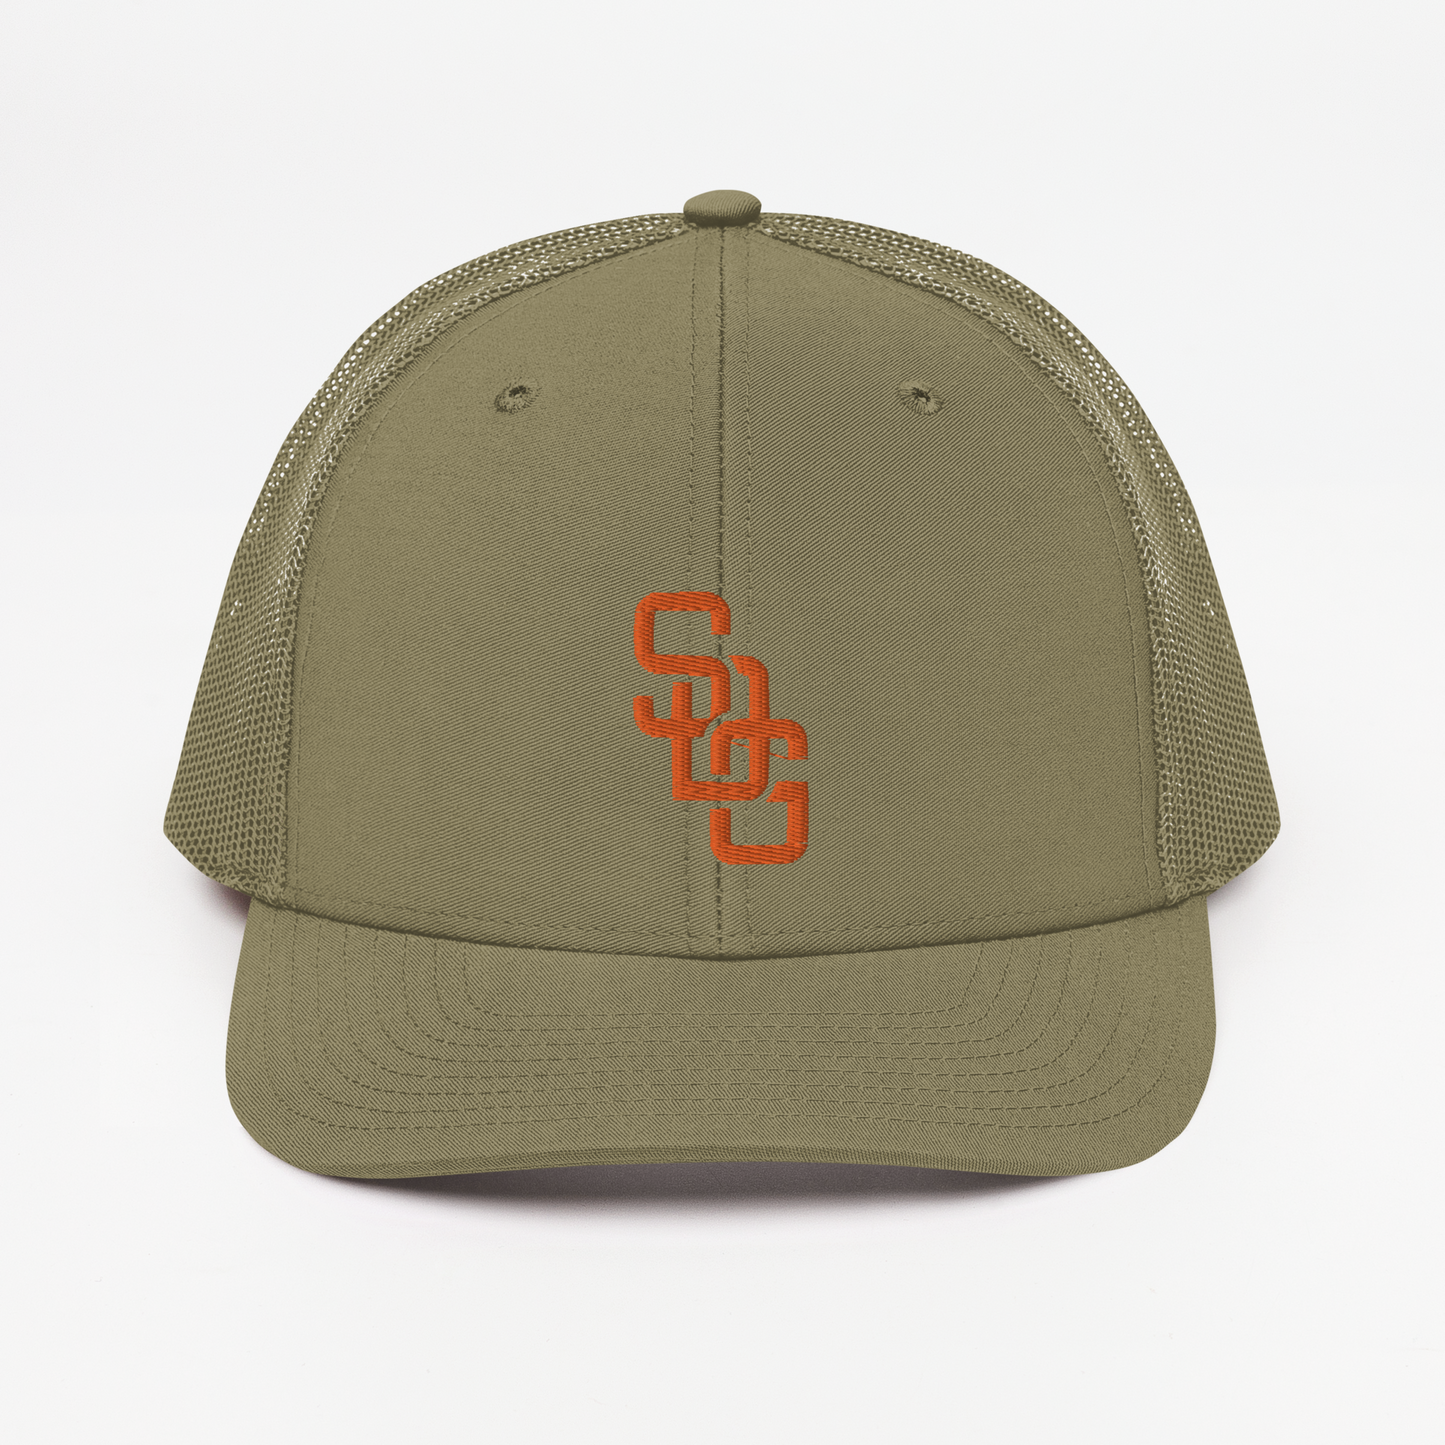 SDG Richardson Trucker Hat